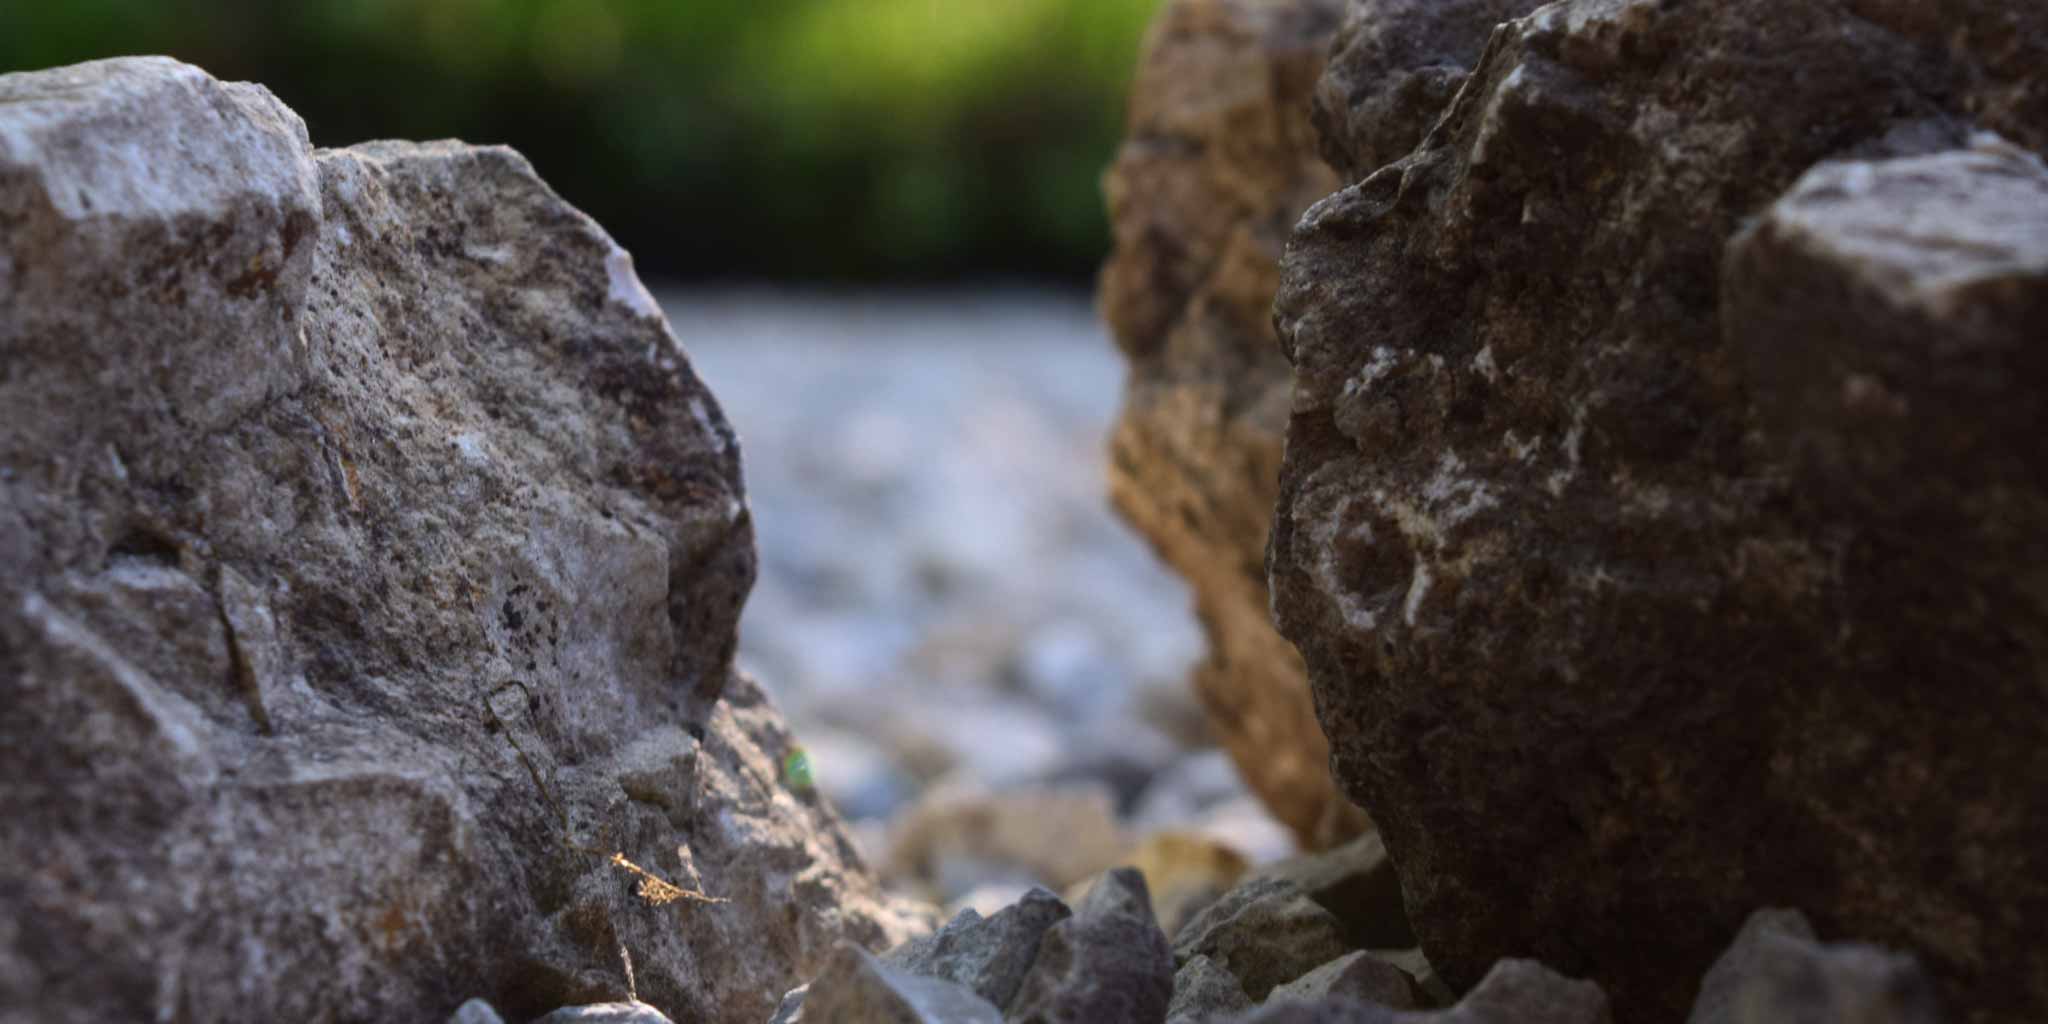 Steinsetzung in einem japanischen Garten